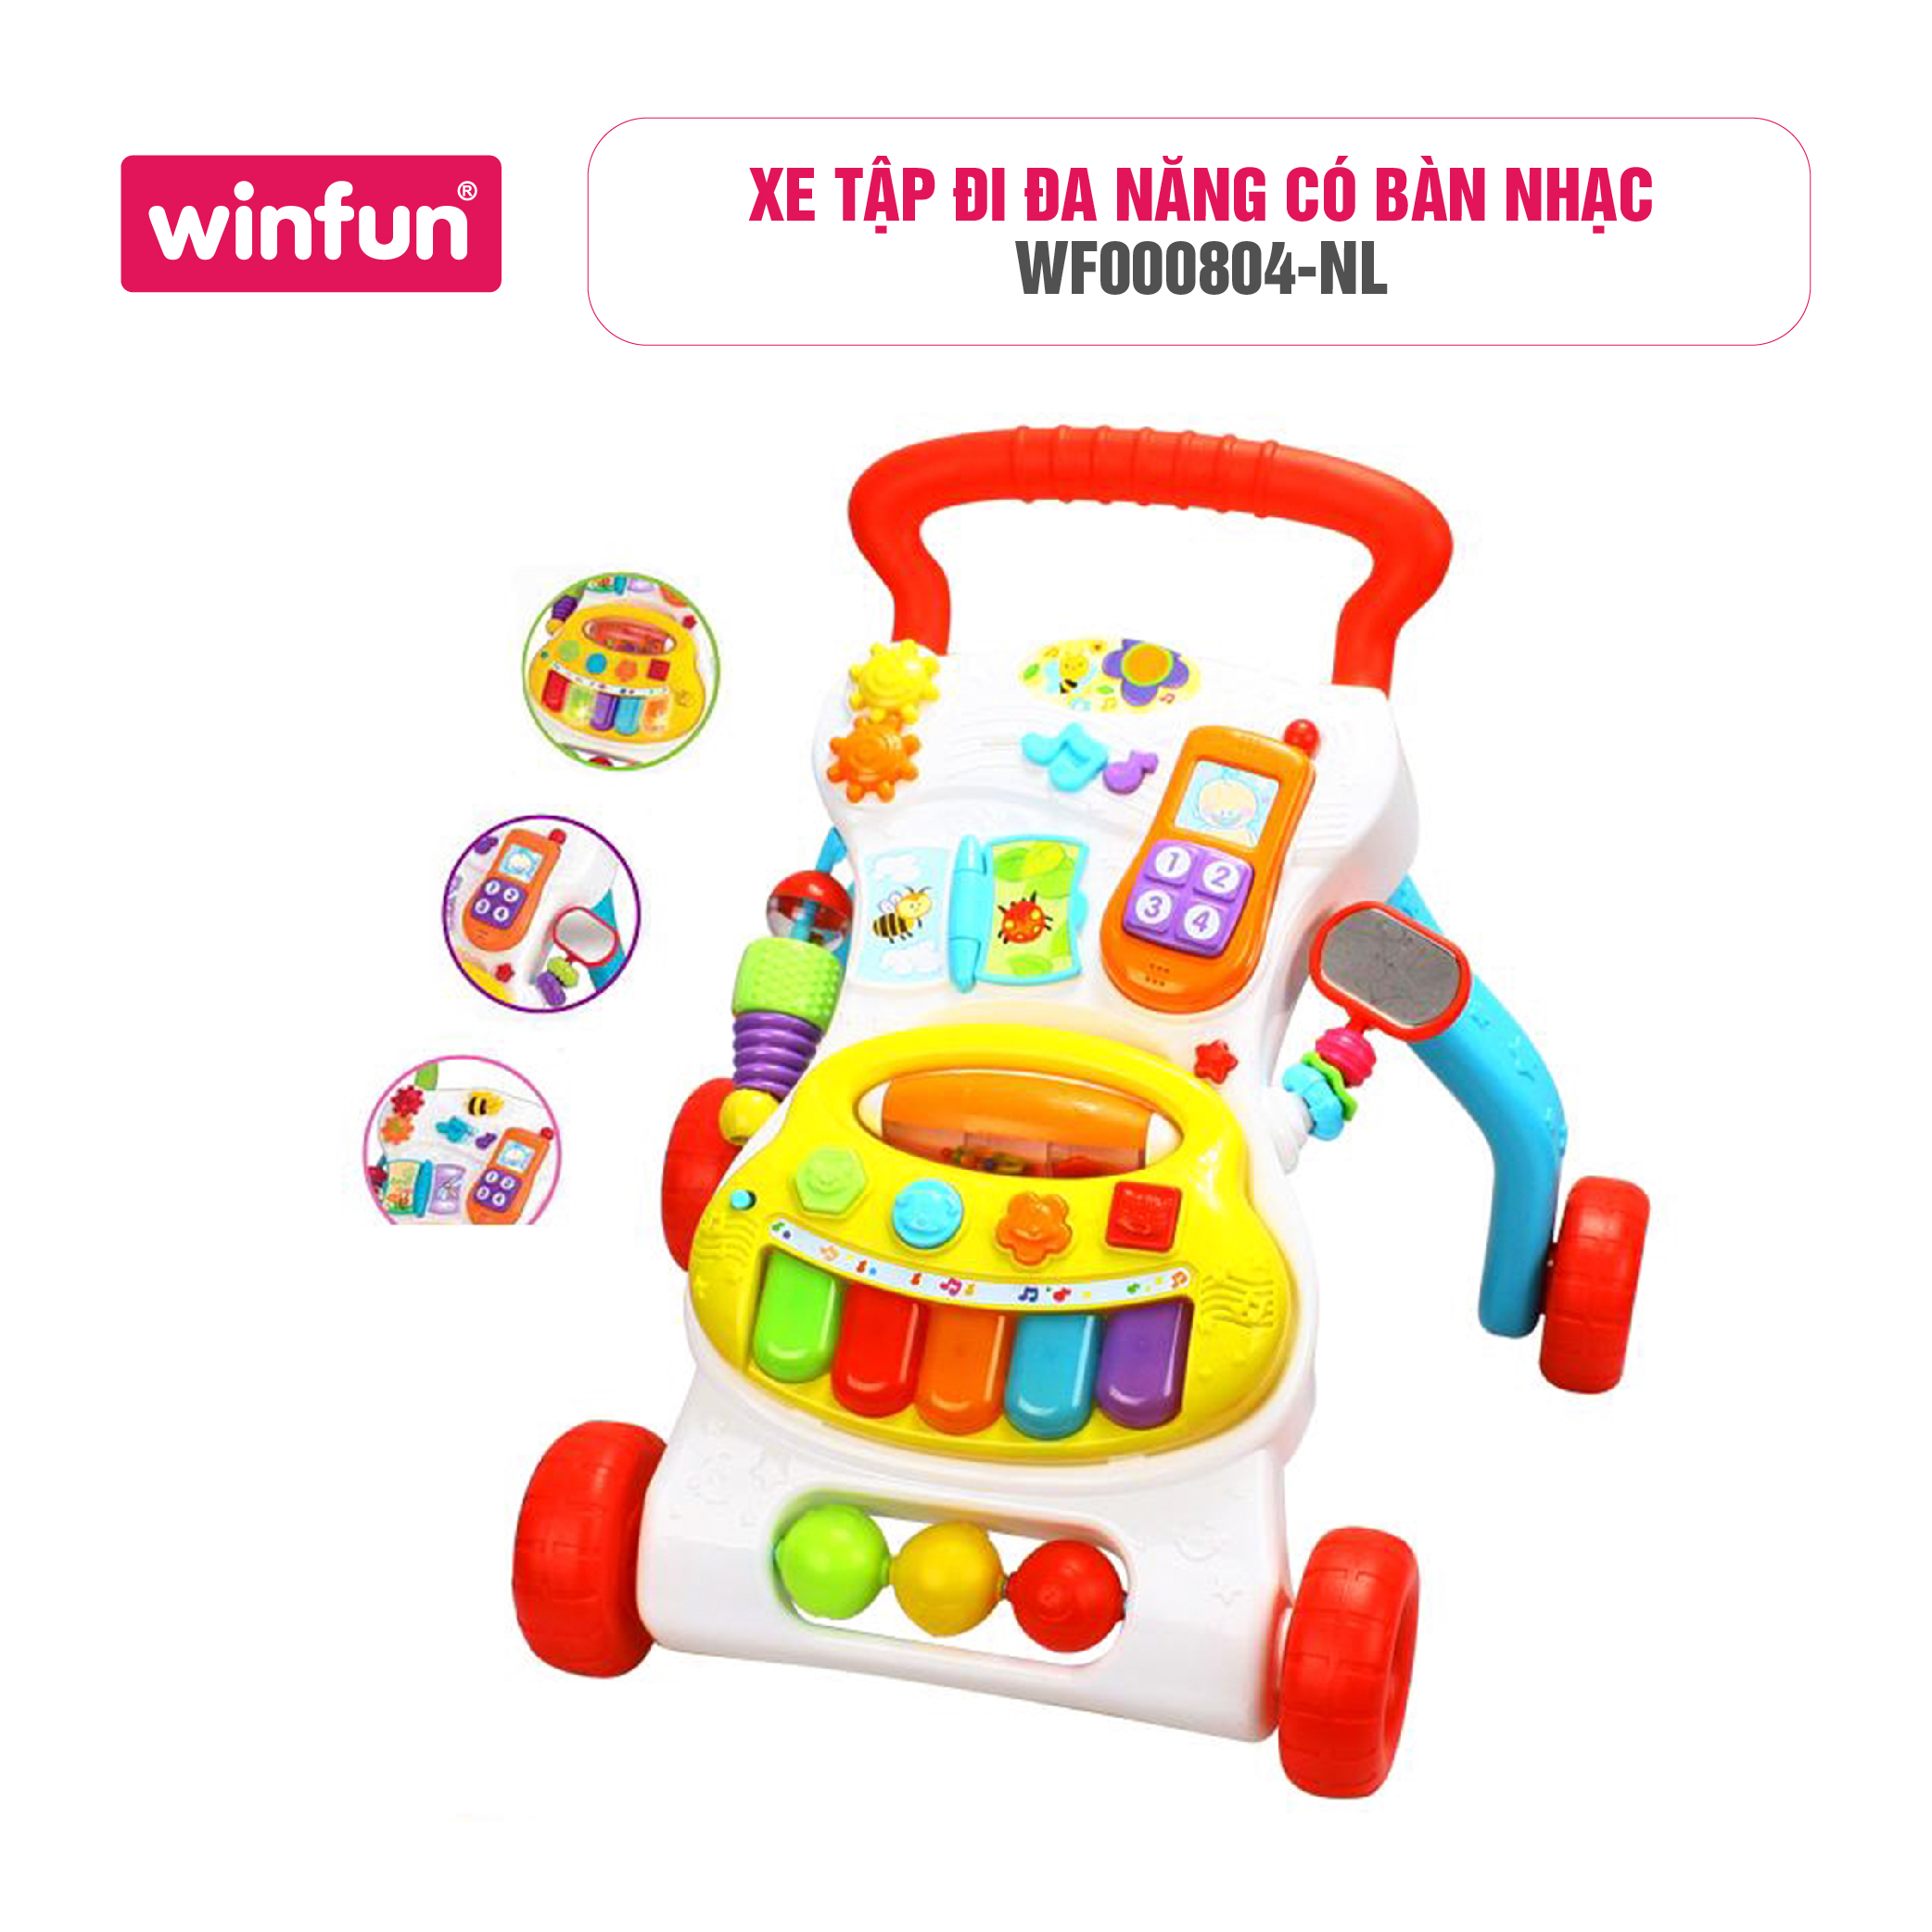 Xe tập đi trẻ em đa năng có bàn nhạc Winfun WF0804 cho bé từ 6 tháng tuổi